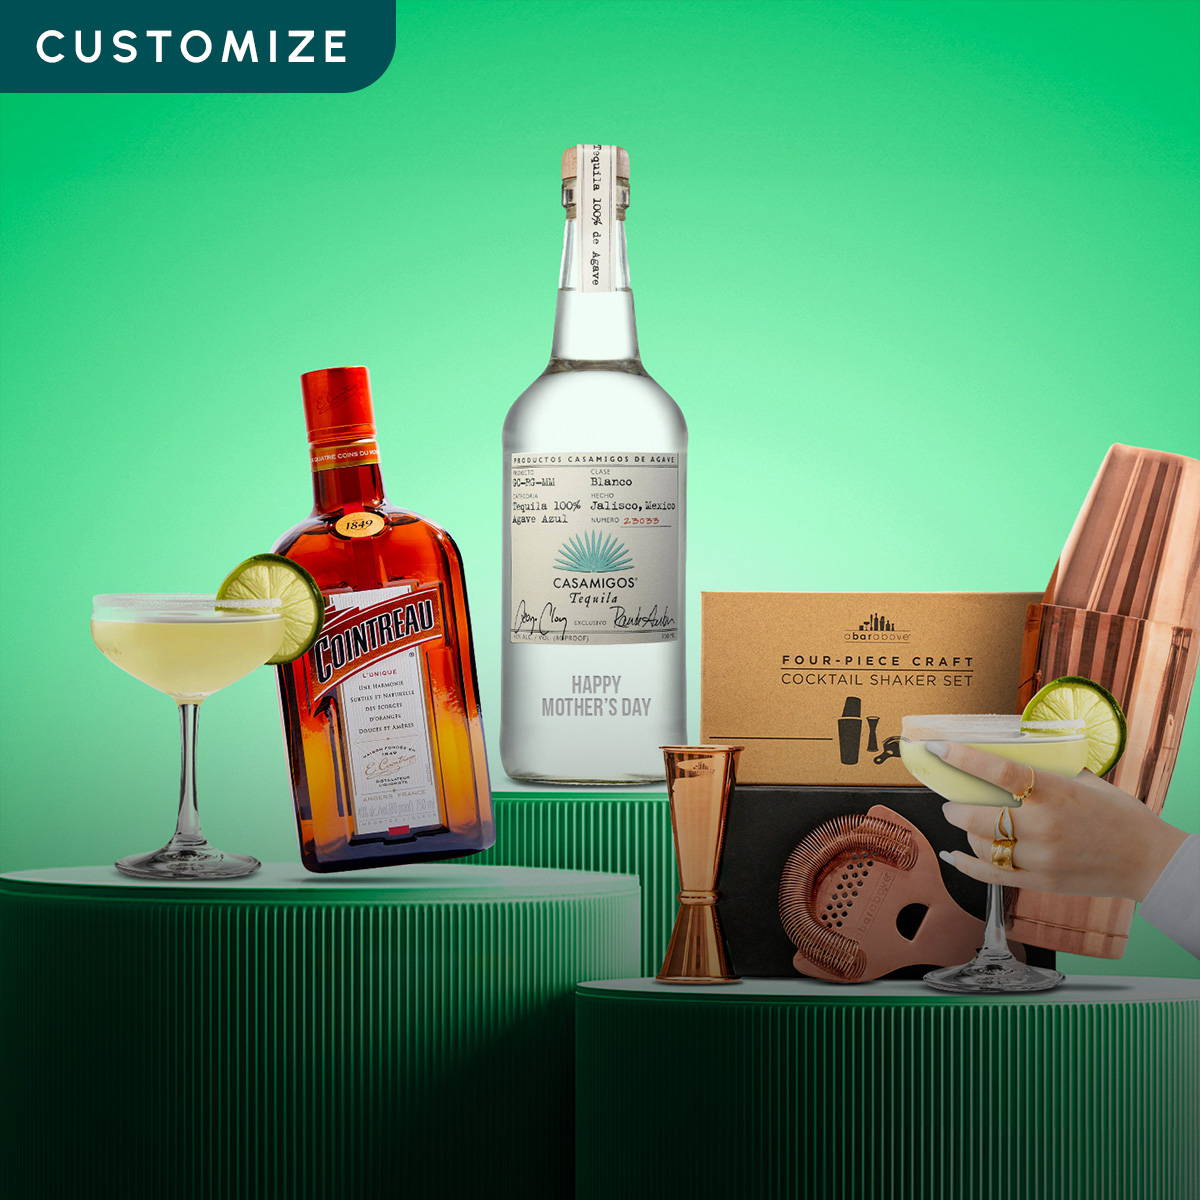 Margarita Cocktail Kit